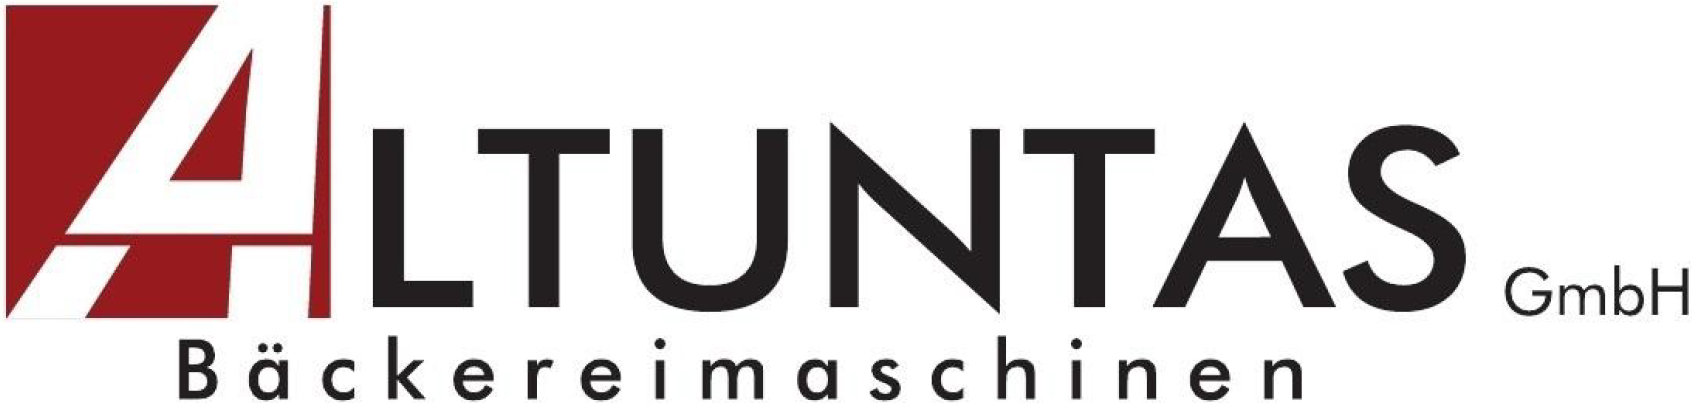 Altuntas GmbH Bckereimaschinen